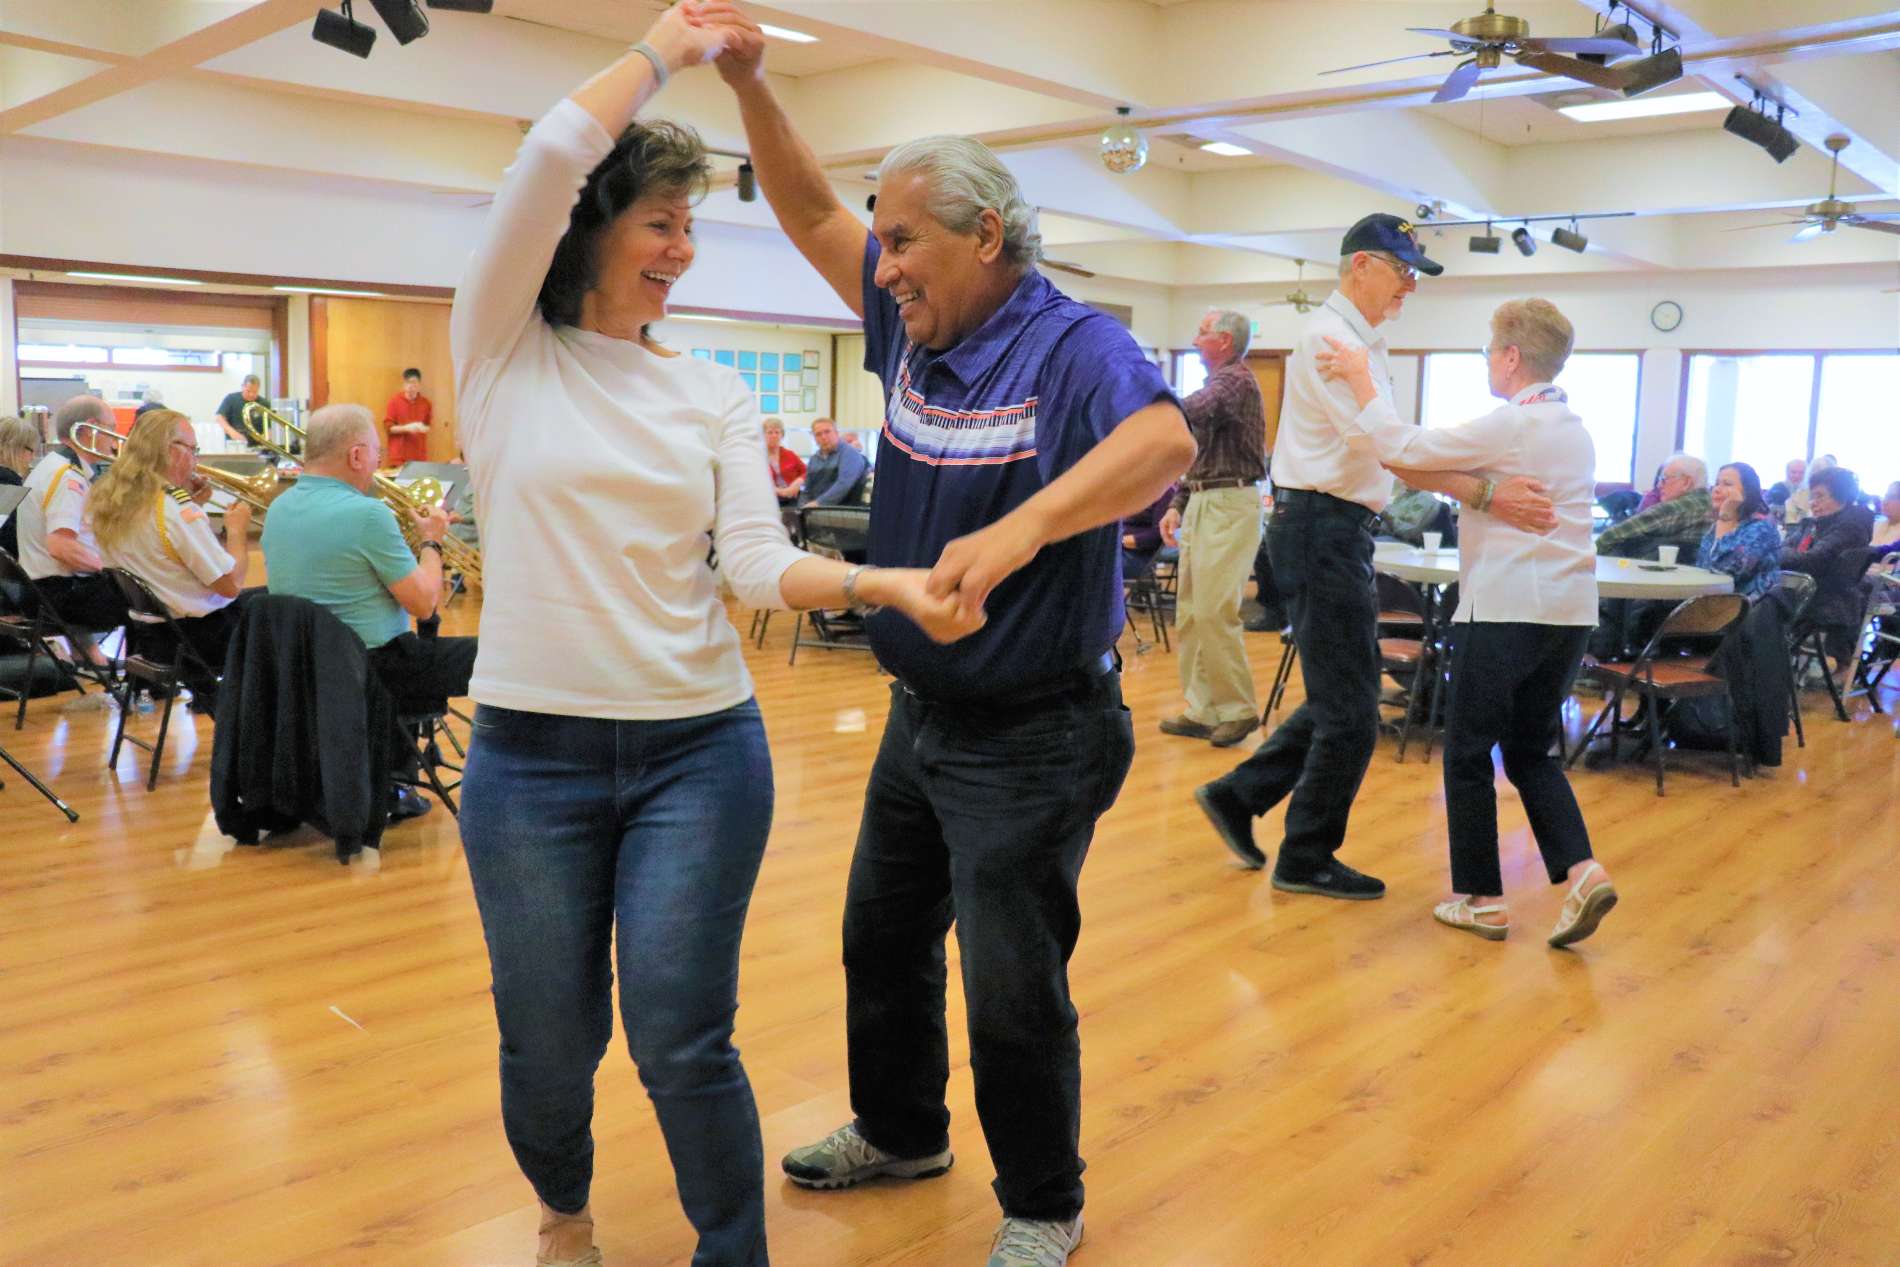 Seniors dancing in the ballroom at the Clovis Senior Center